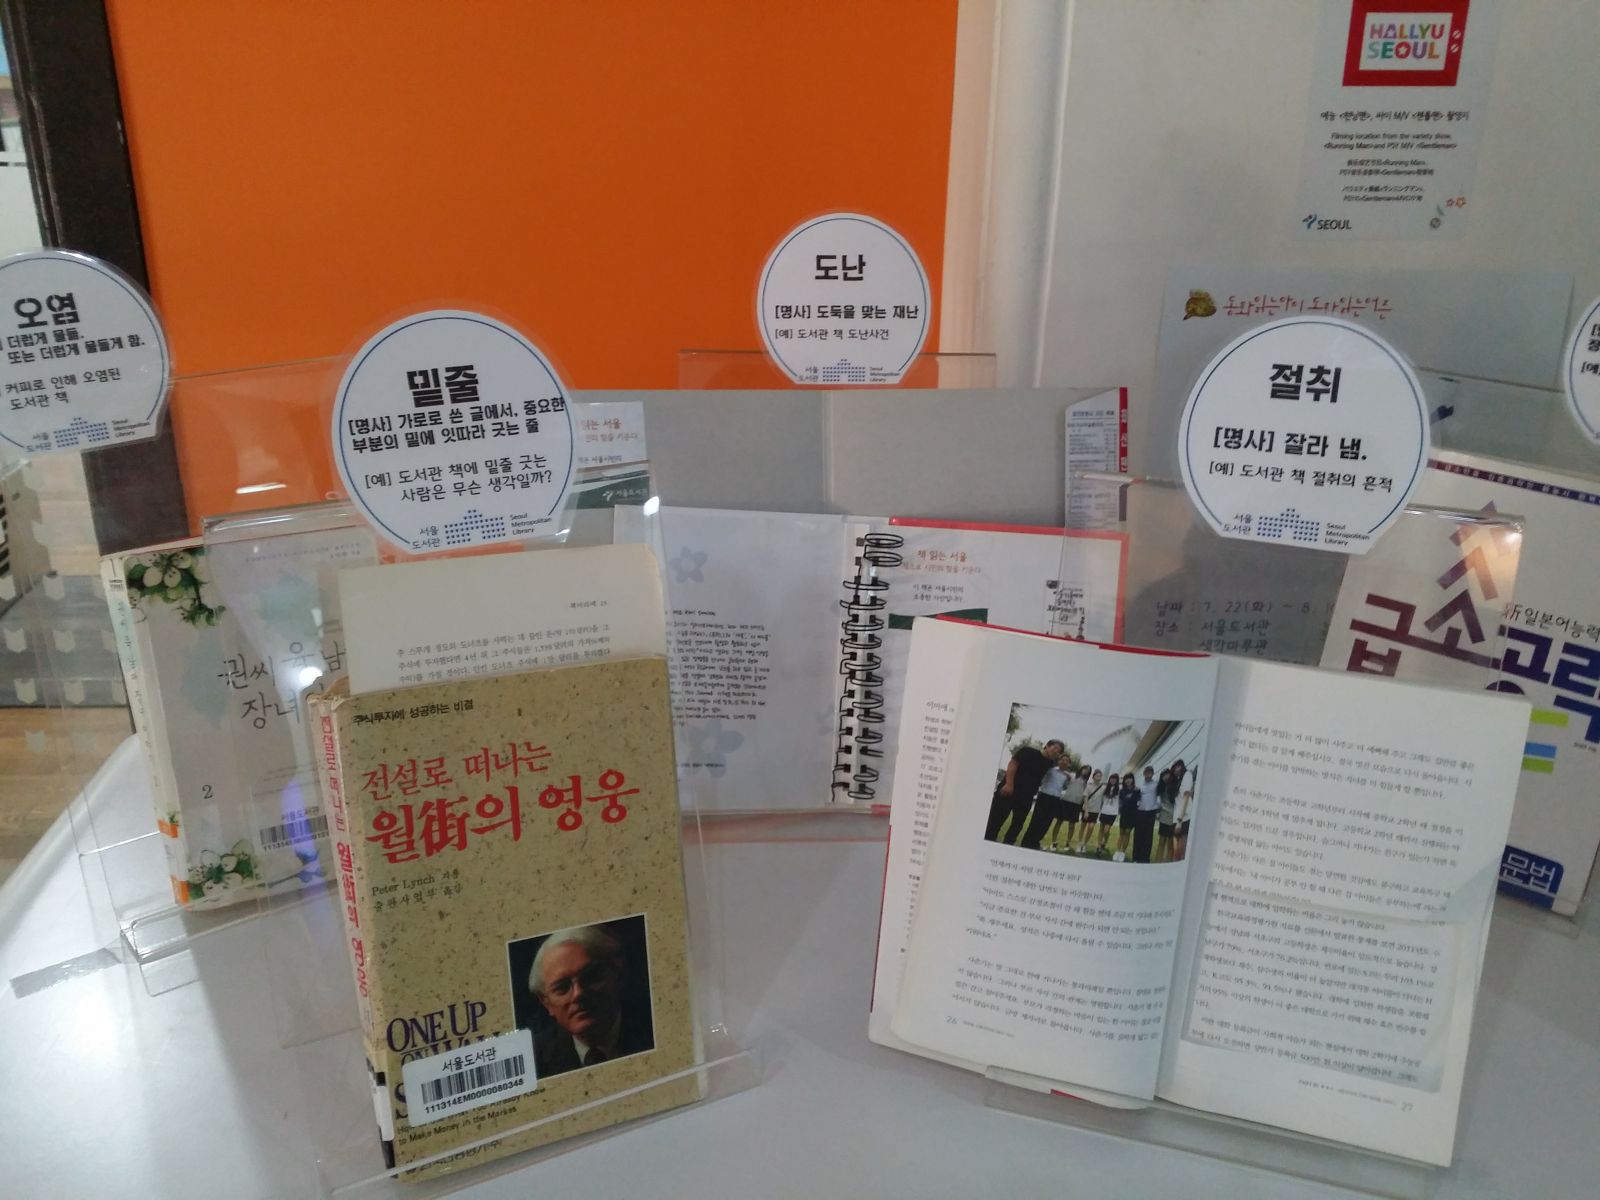  [전시]『서울도서관 훼손도서 전시』 포스터